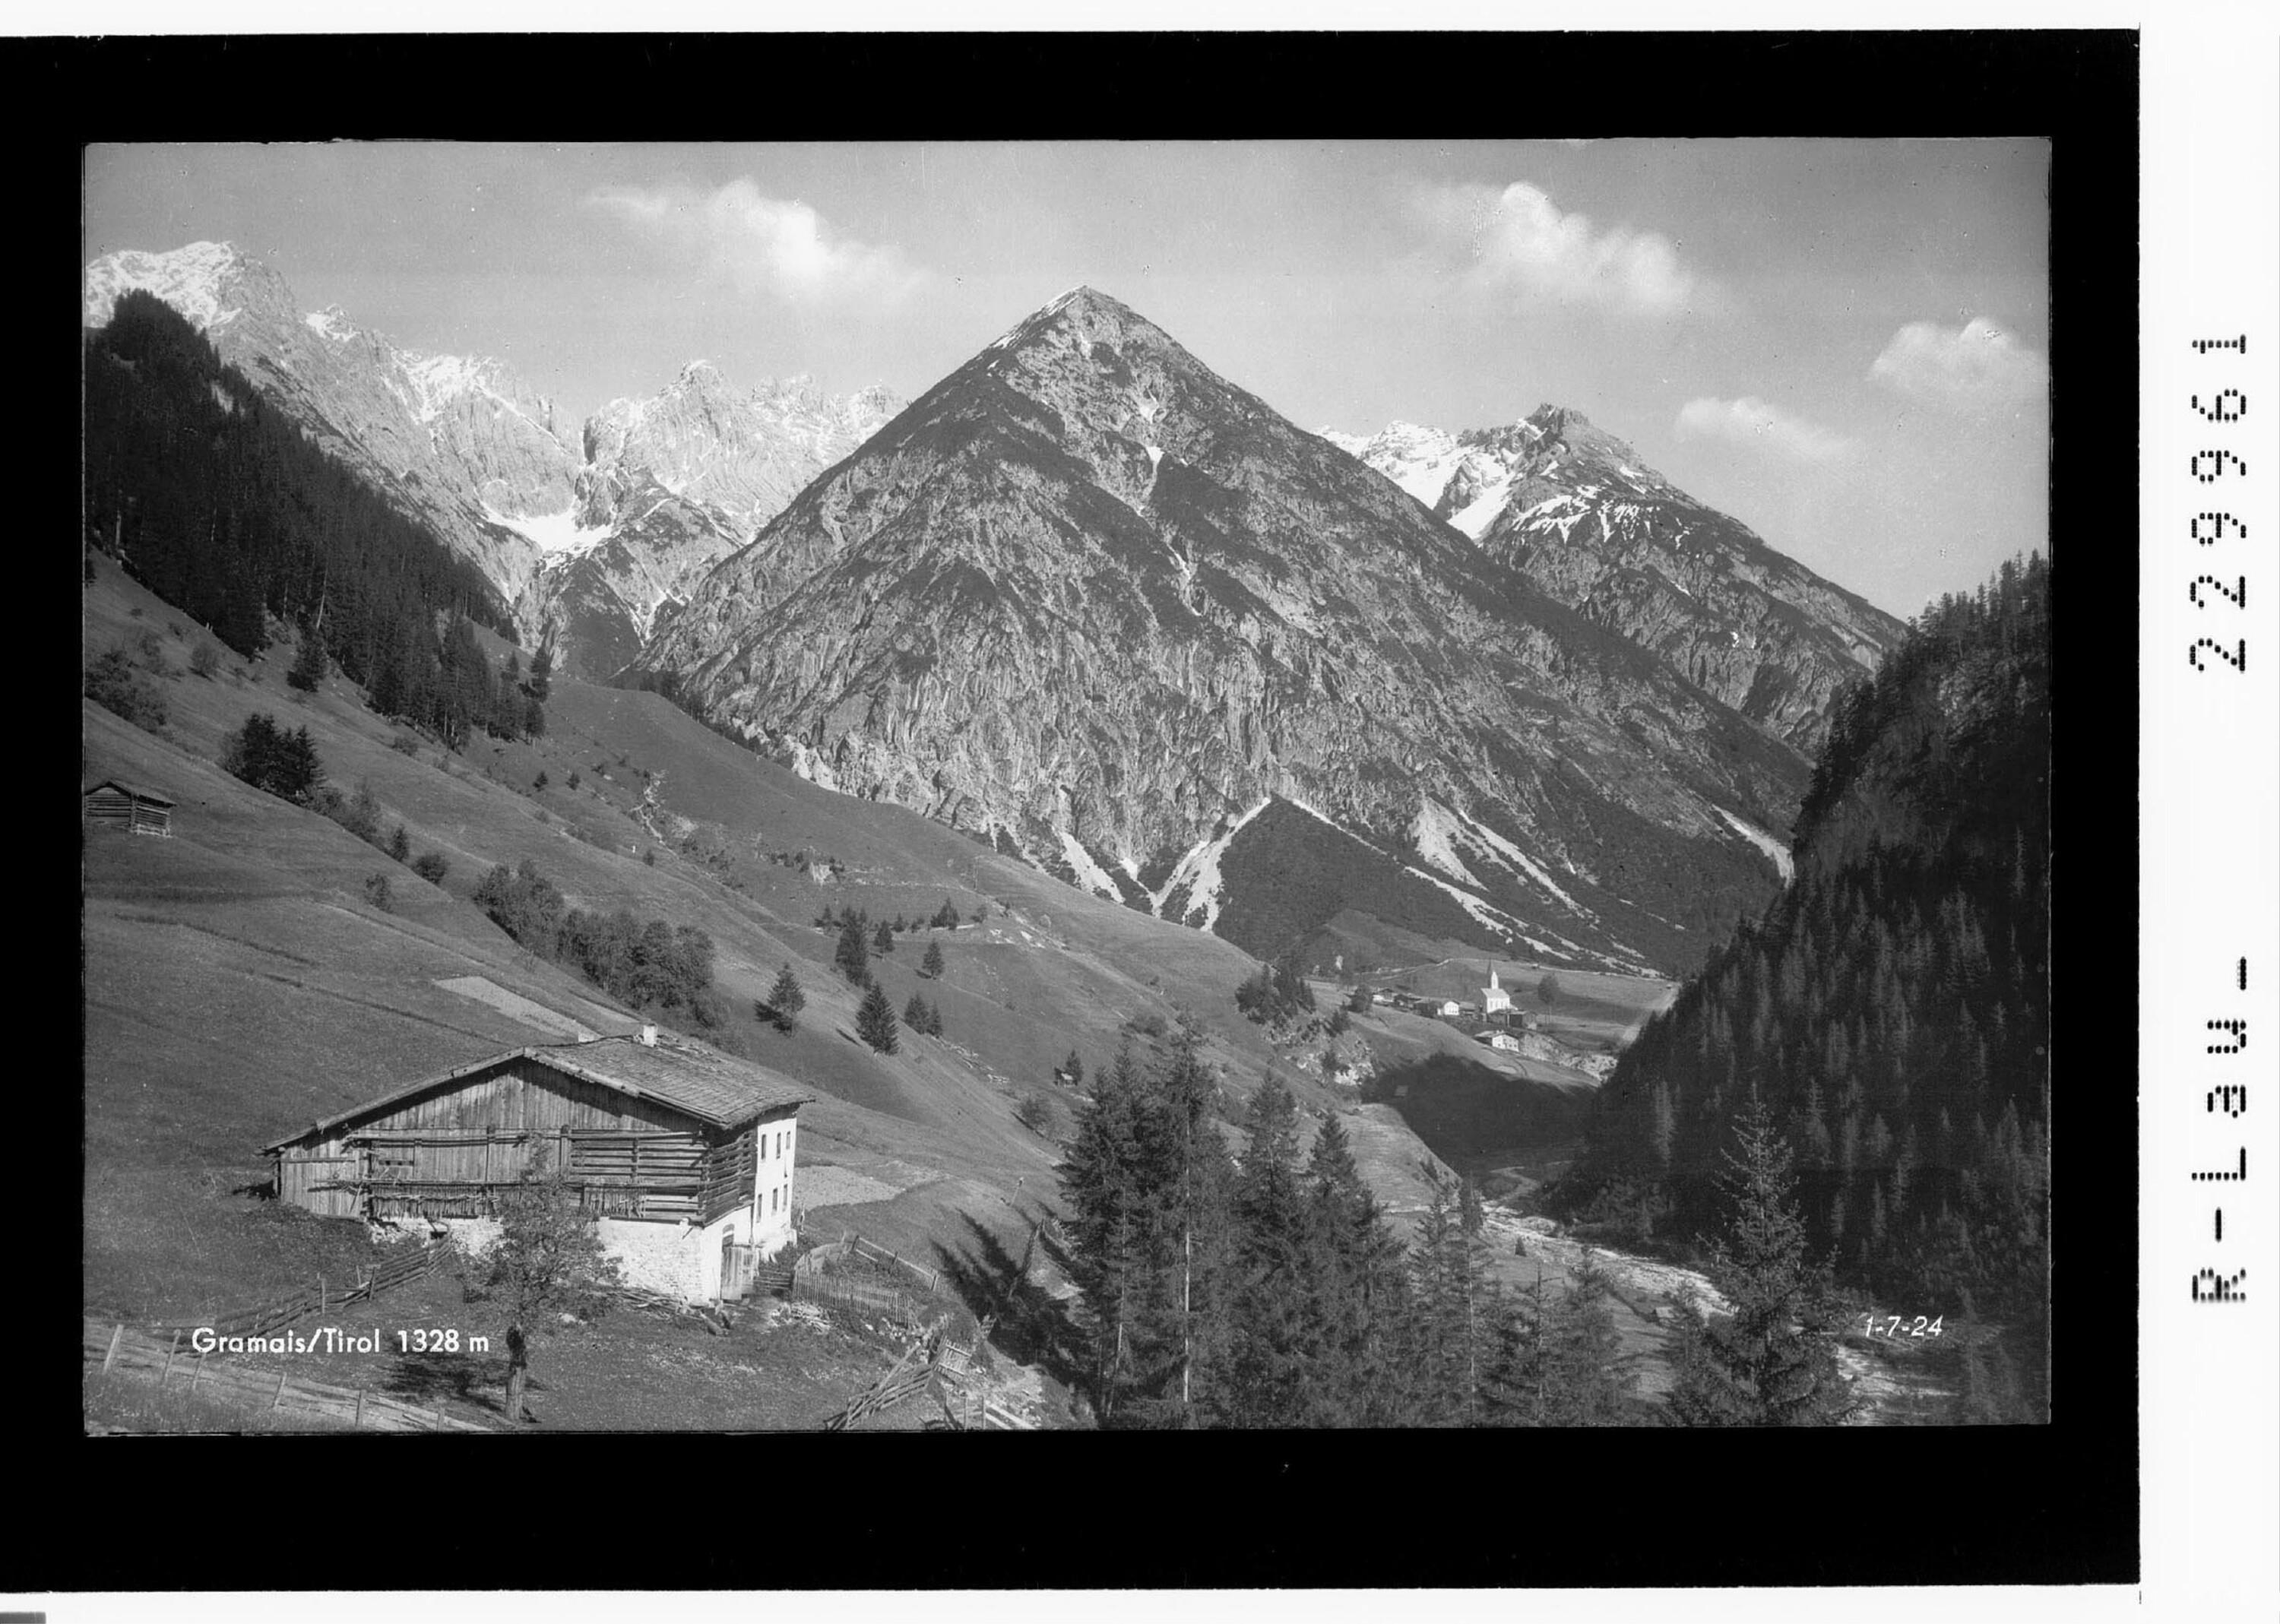 Gramais / Tirol 1328 m></div>


    <hr>
    <div class=